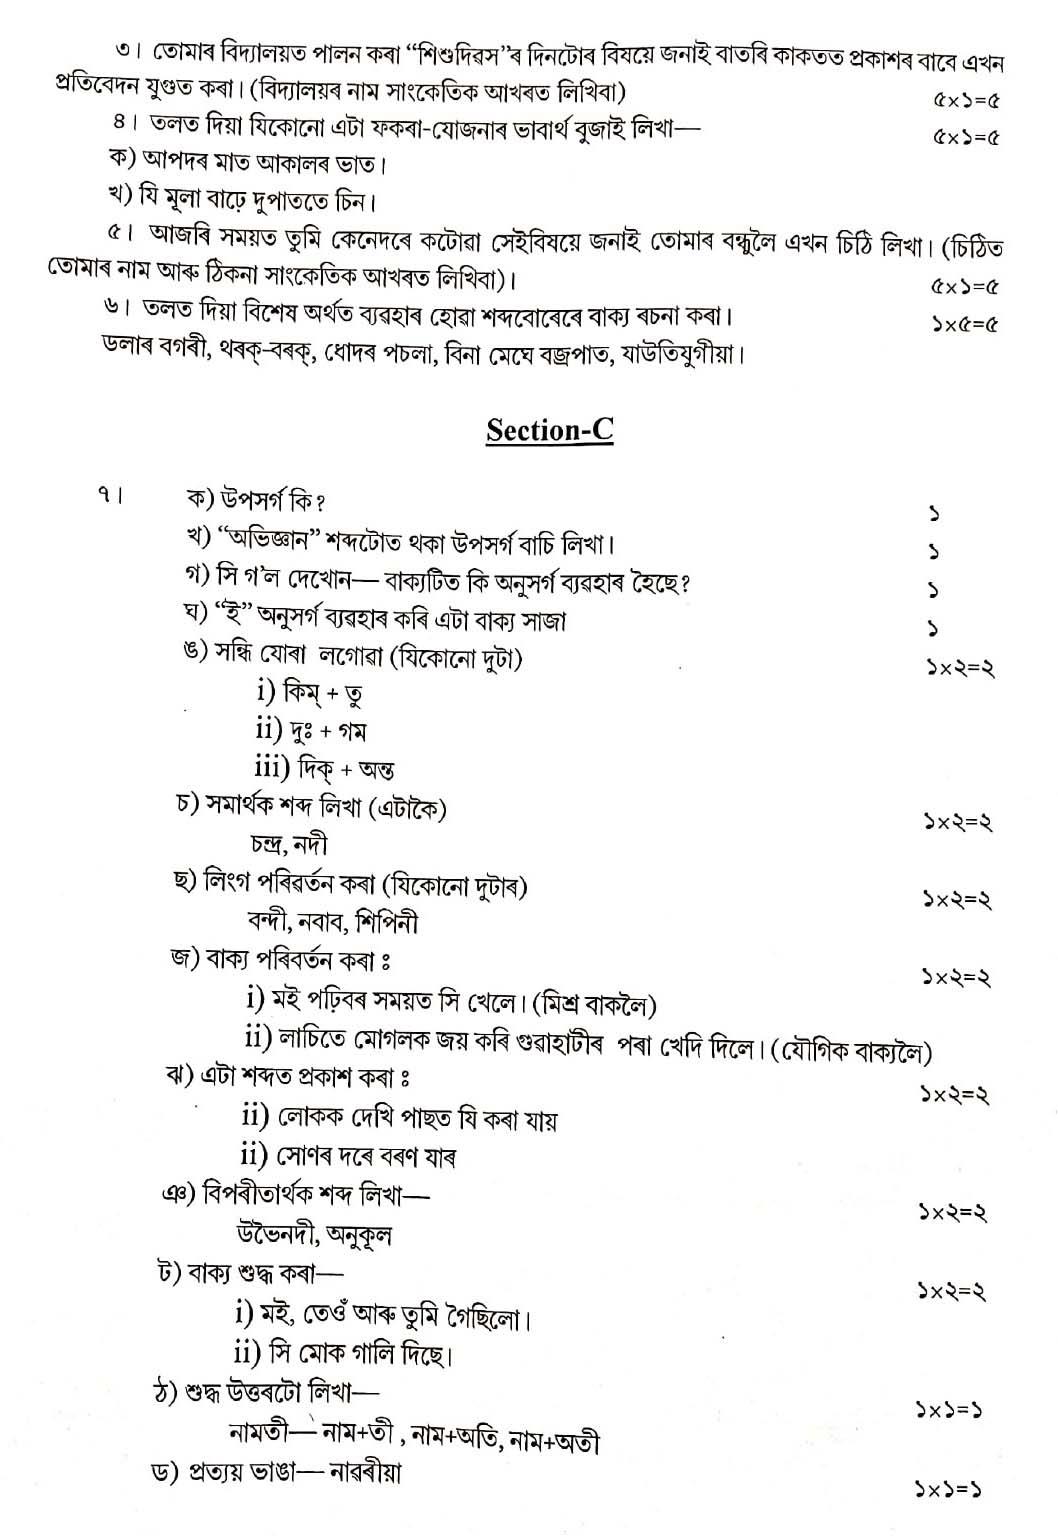 Assamese CBSE Class X Sample Question Paper 2019 20 - Image 3